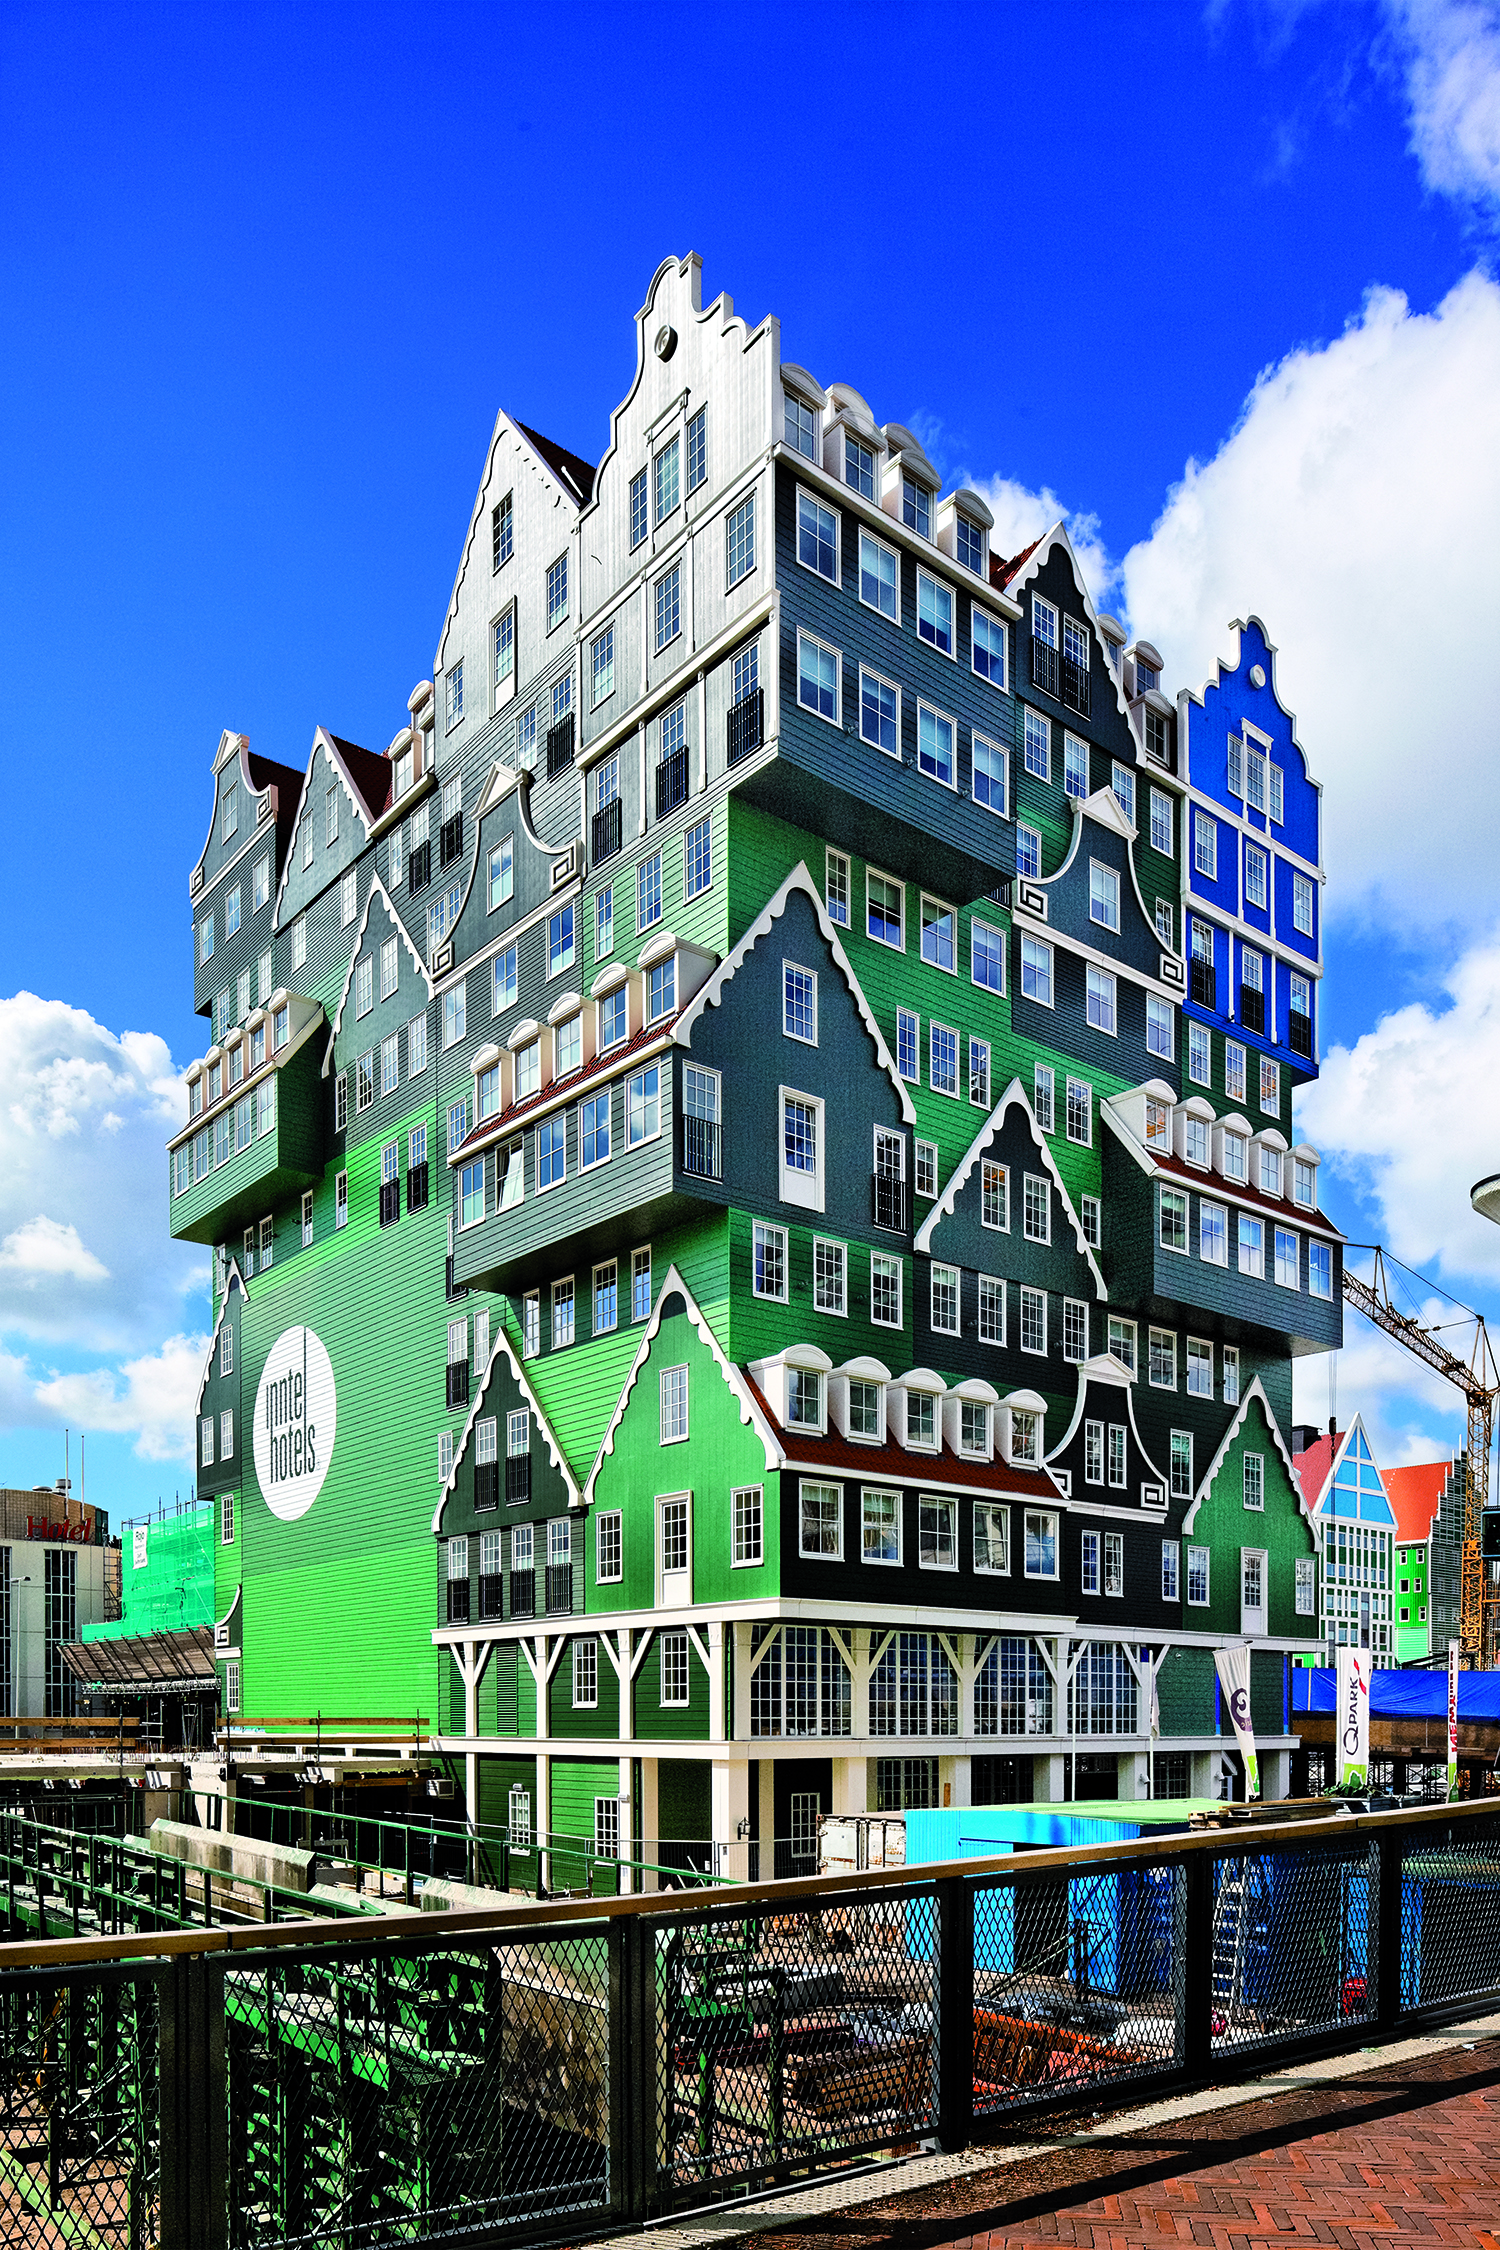 Nuttig motor Is Inntel Hotel in Amsterdam Zaandam, Nederland - Cedral